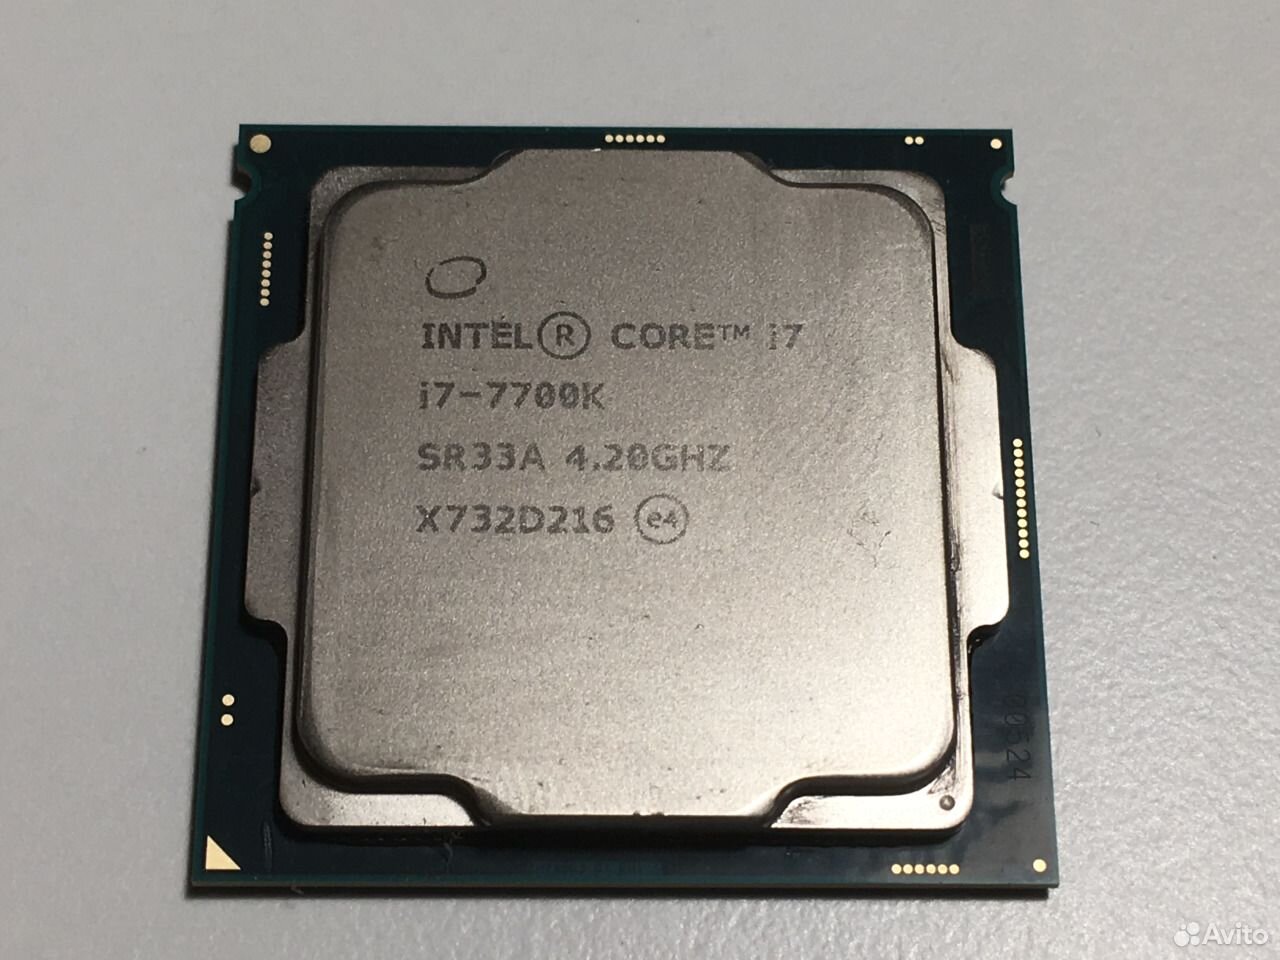 Интел 7700. Процессор Intel Core i7-7700k. Intel Core i7-7700 lga1151, 4 x 3600 МГЦ. I7 7700k под крышкой. Брак процессора Intel 7700.